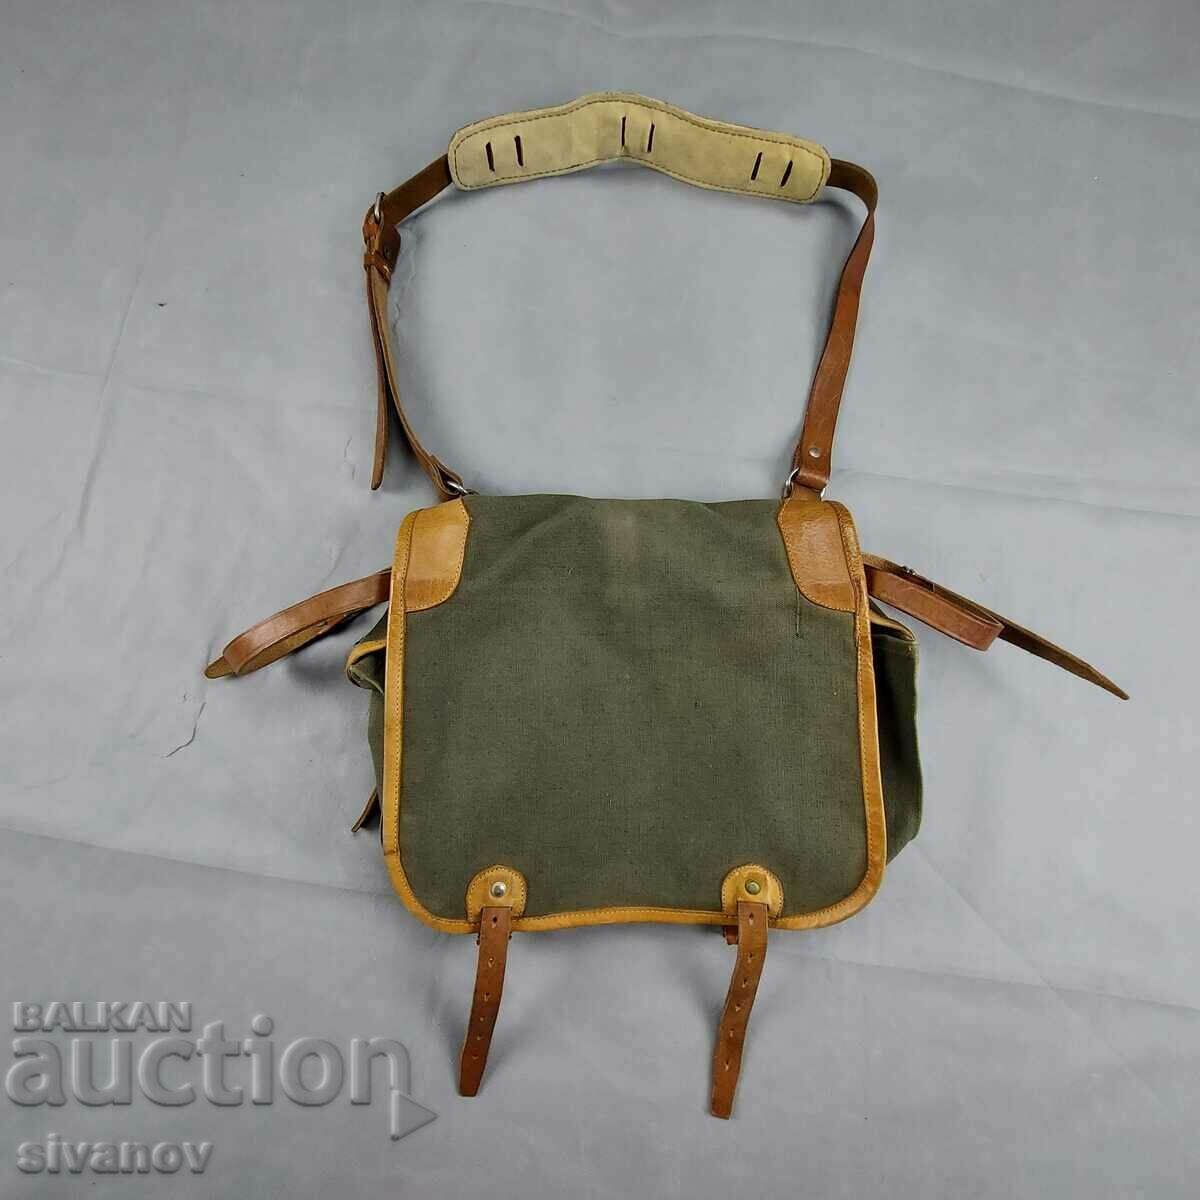 Vintage canvas shoulder bag with leather Slavia #5468